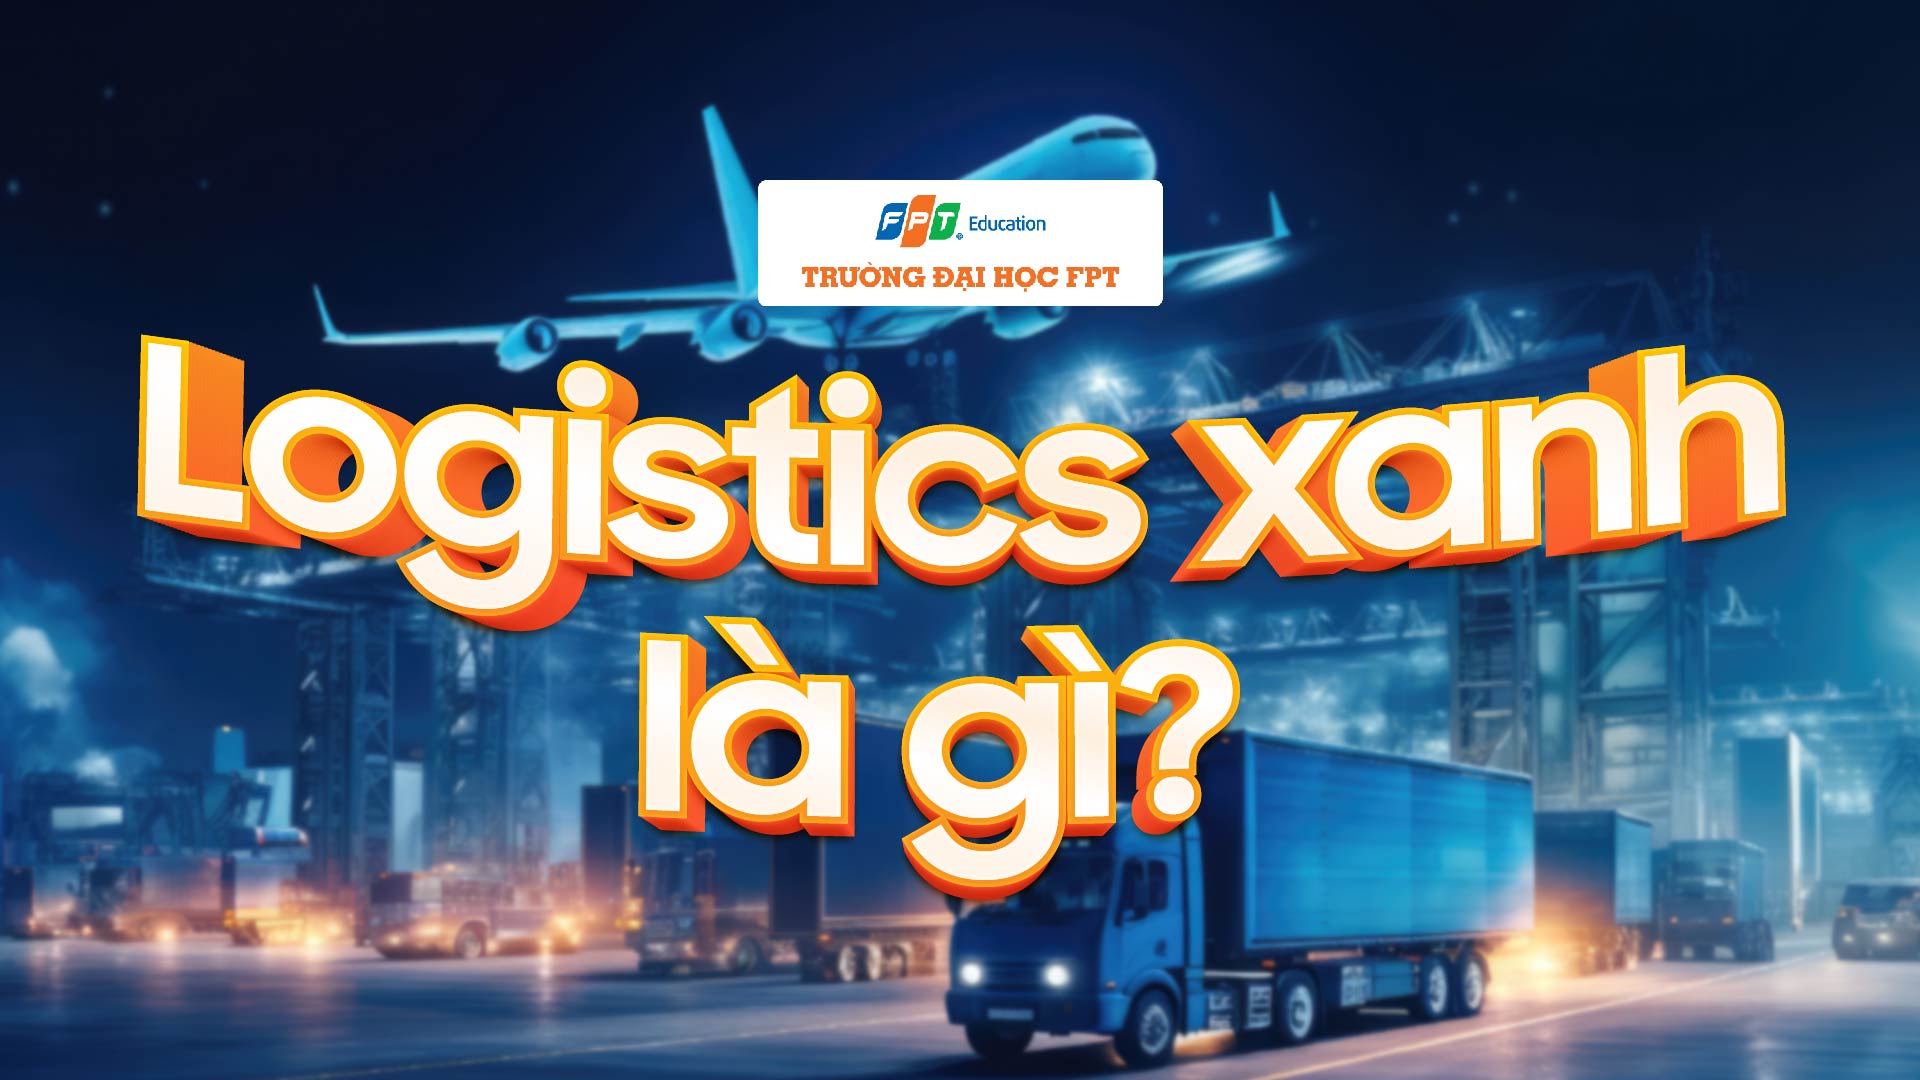 Logistics xanh là gì? 4 lợi ích từ green logistics